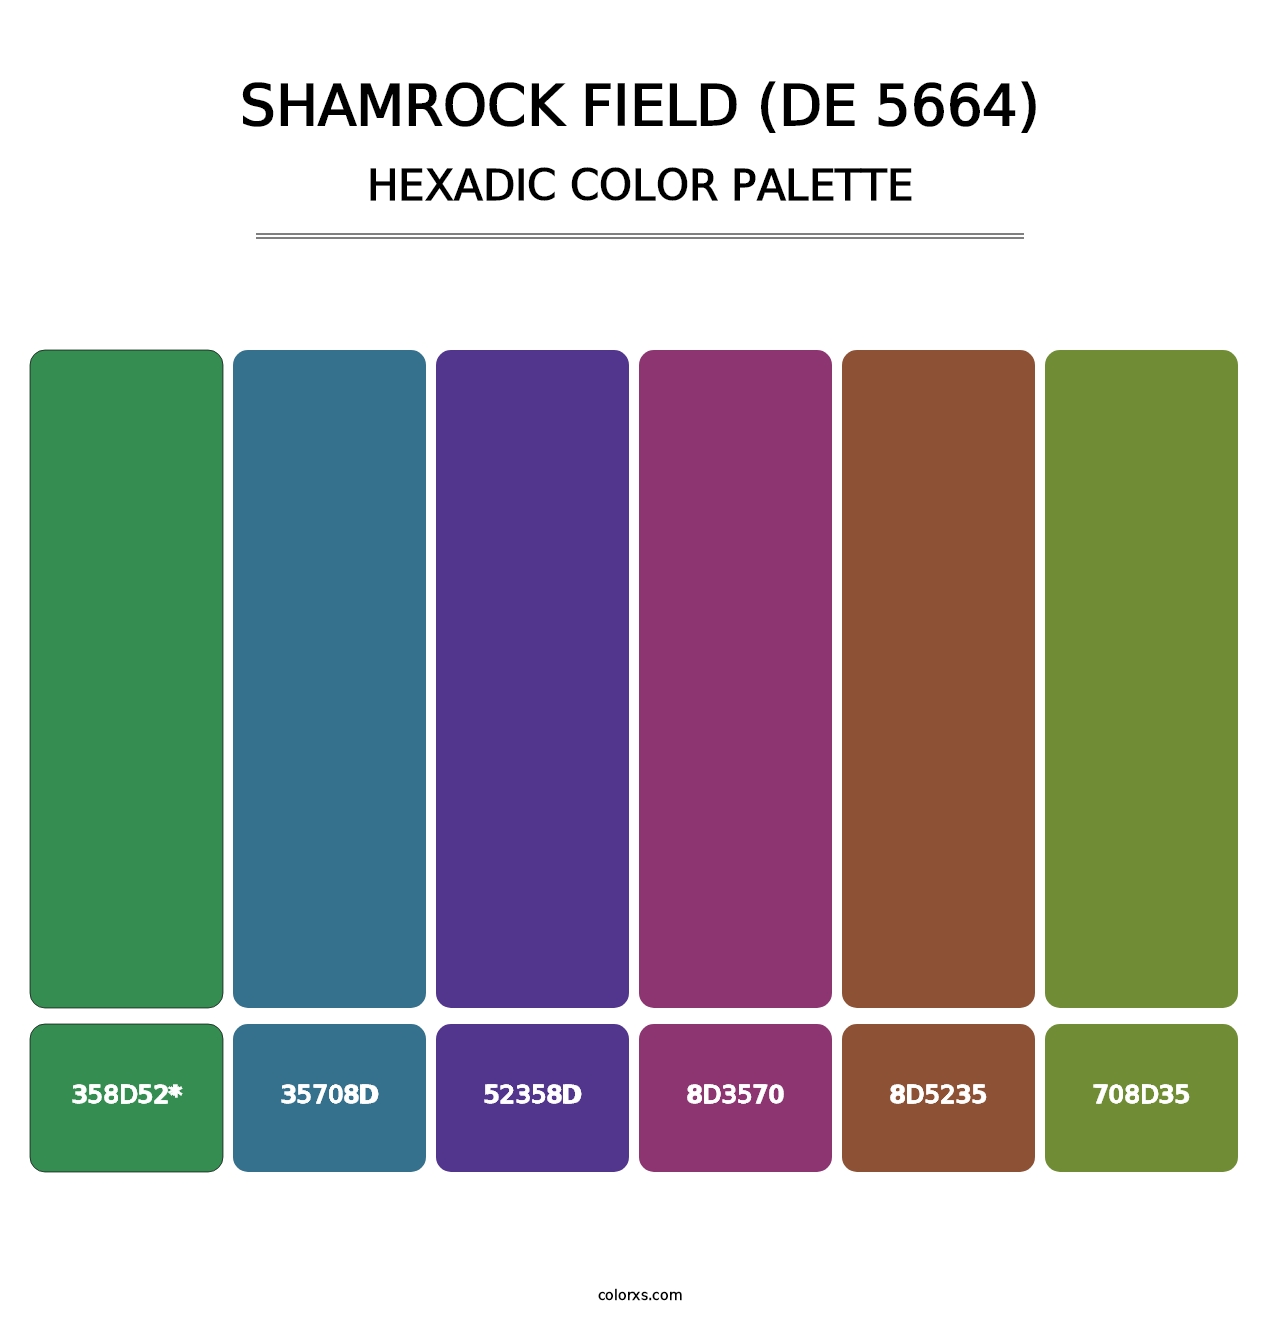 Shamrock Field (DE 5664) - Hexadic Color Palette